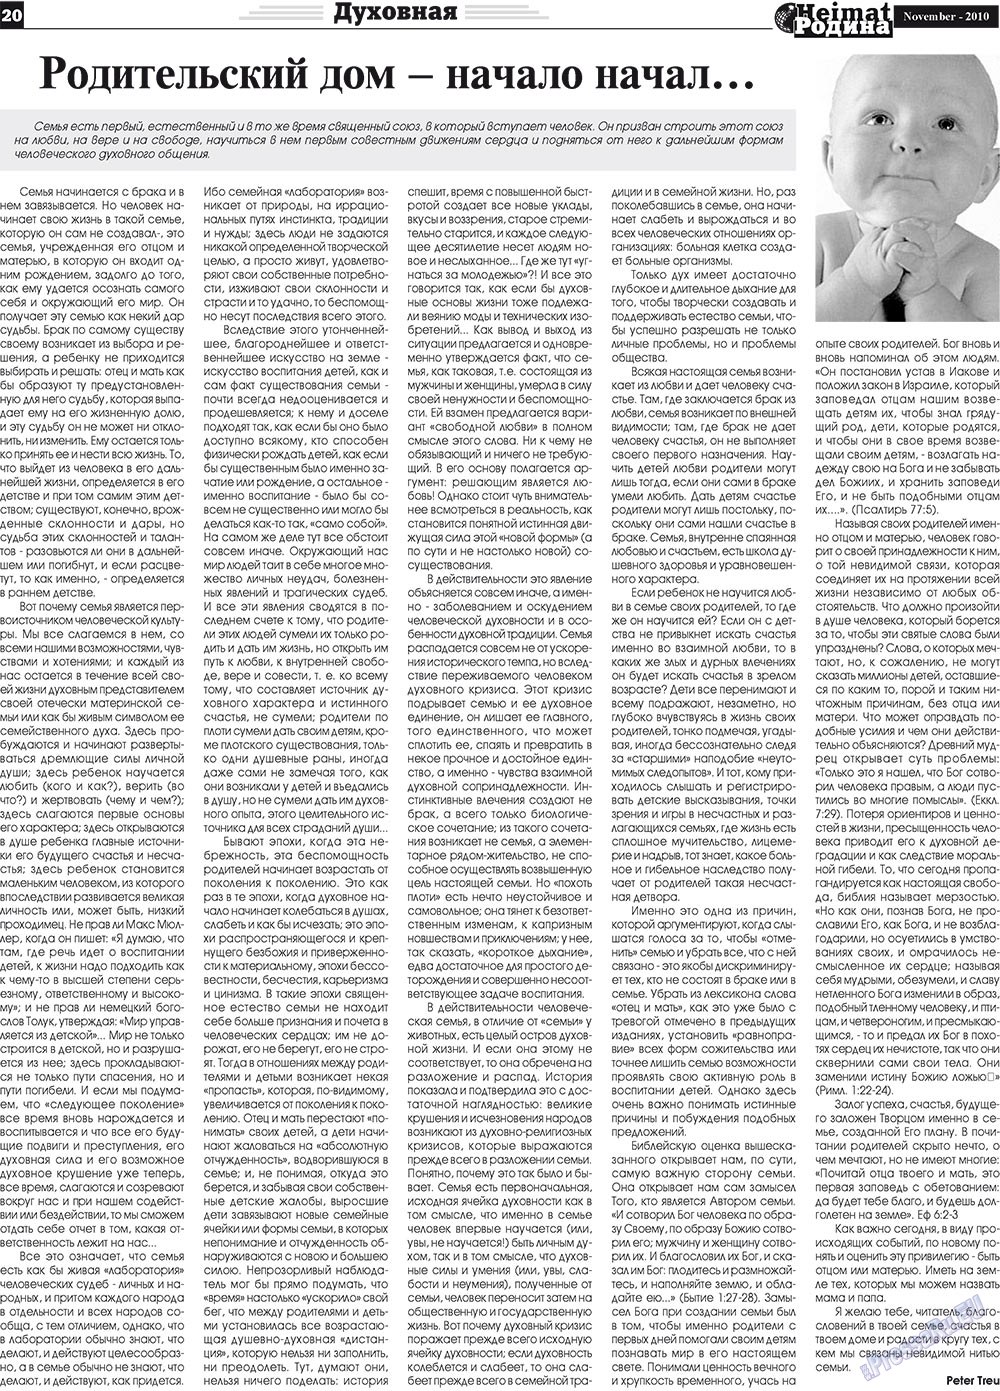 Heimat-Родина (газета). 2010 год, номер 11, стр. 20